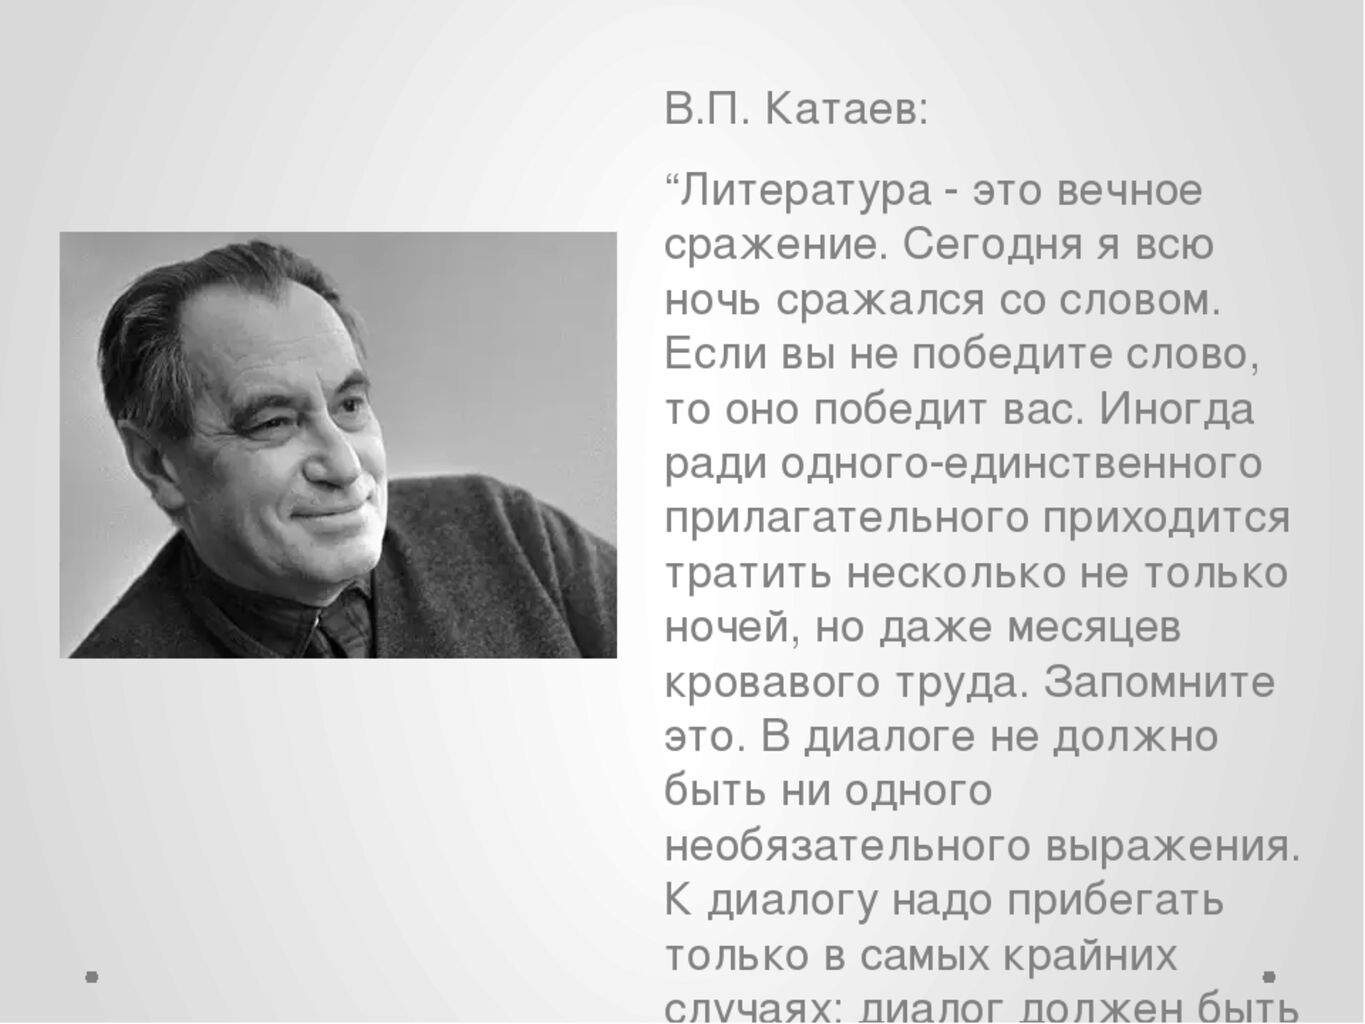 Жизнь и творчество катаева. В.П.Катаев биография.